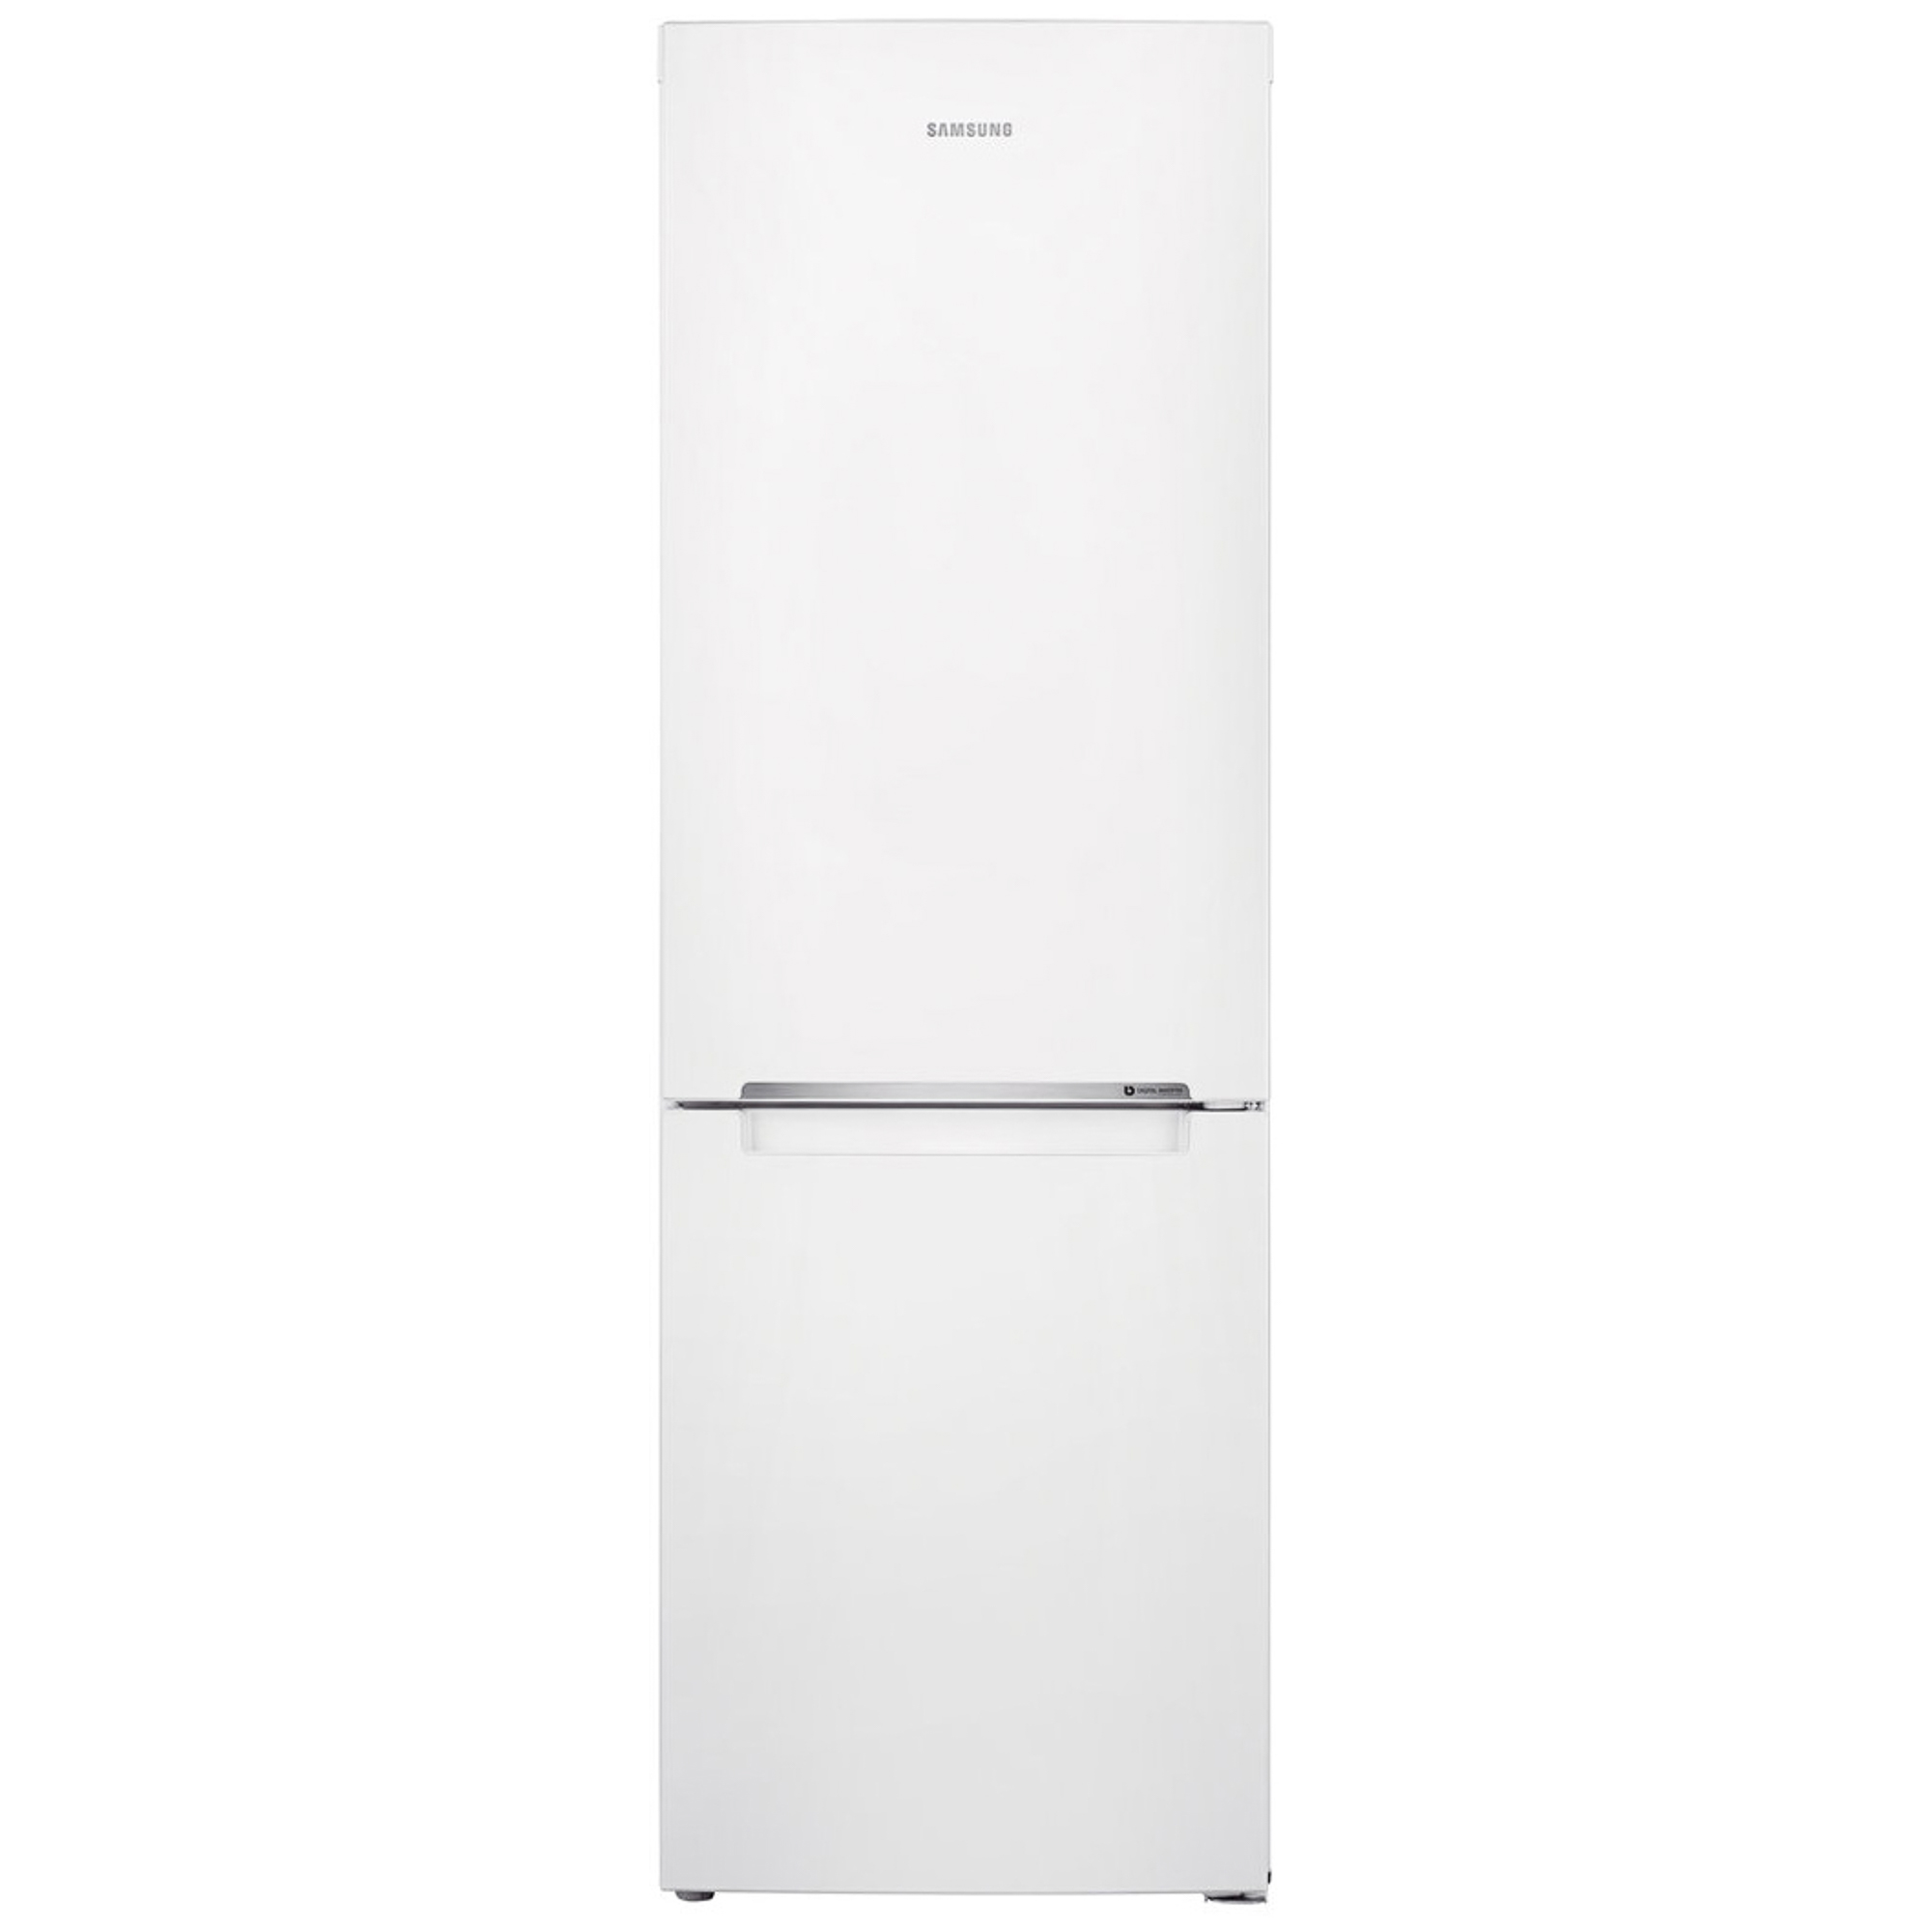 Холодильник Samsung RB30J3000WW White, цвет белый RB30J3000WW/WT - фото 1